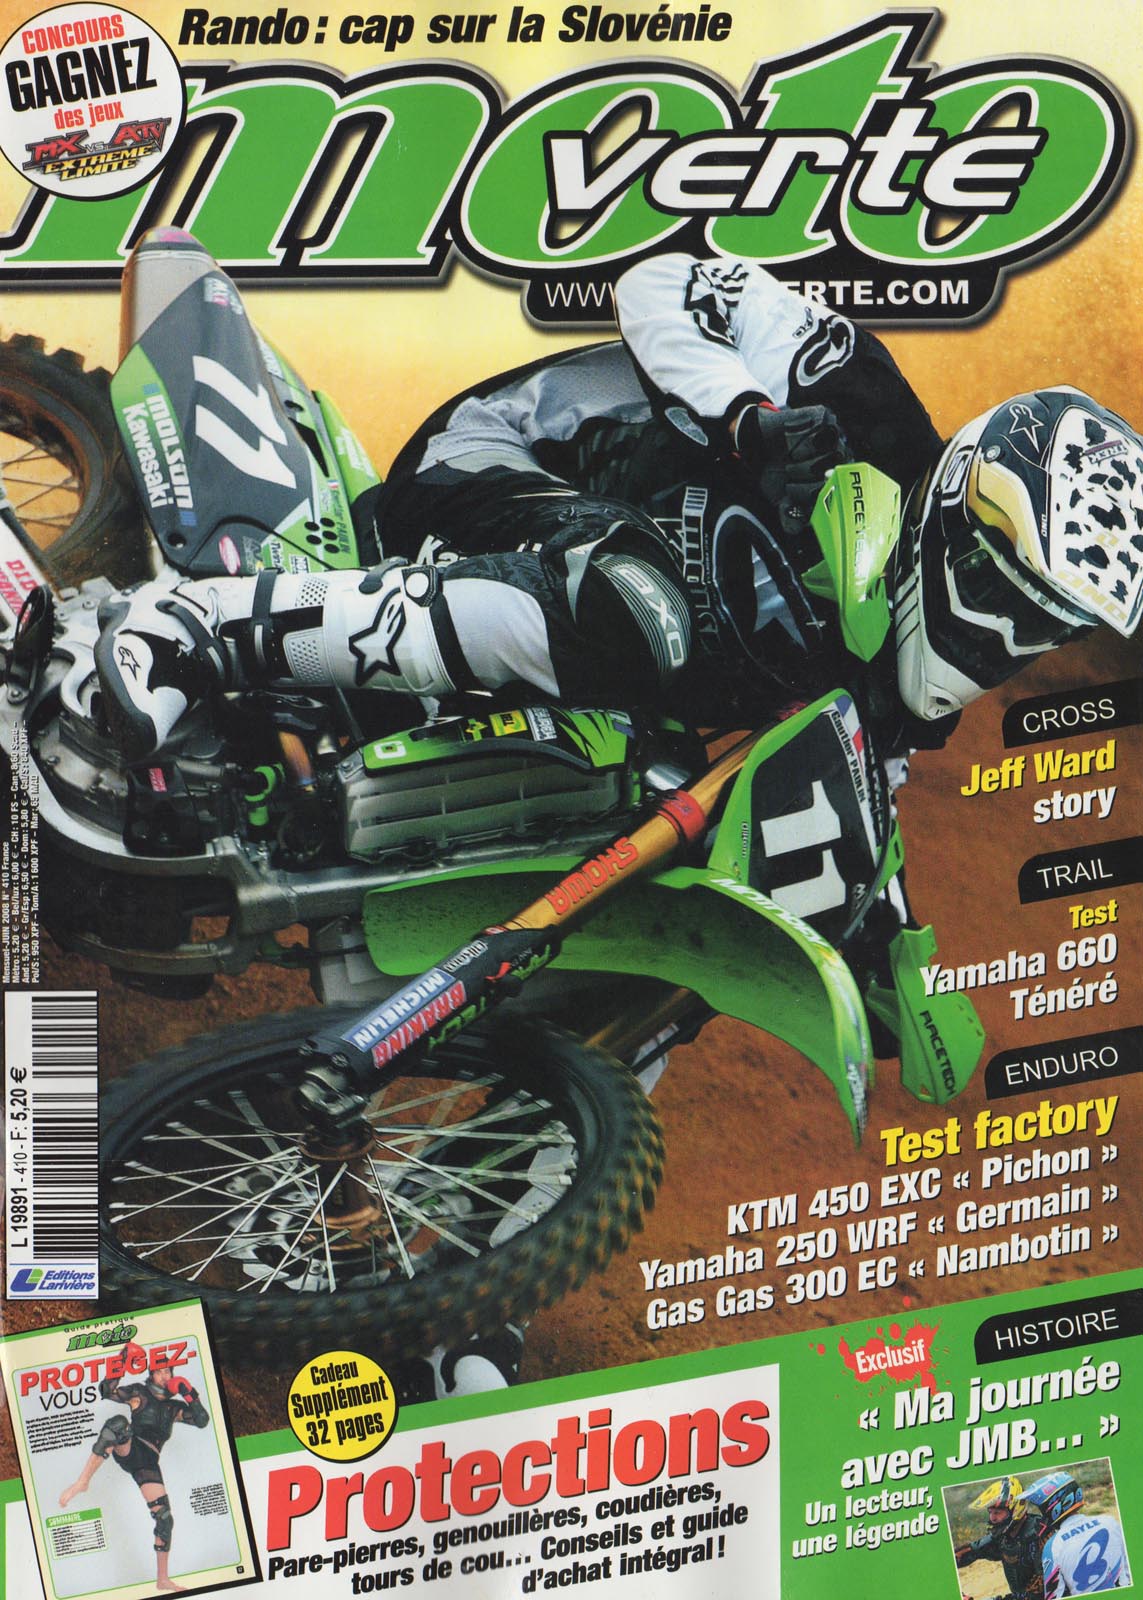 La couverture du numéro 410 de Moto Verte où se trouve JMB et le vainqueur du concours pour gagner une journée avec JMB